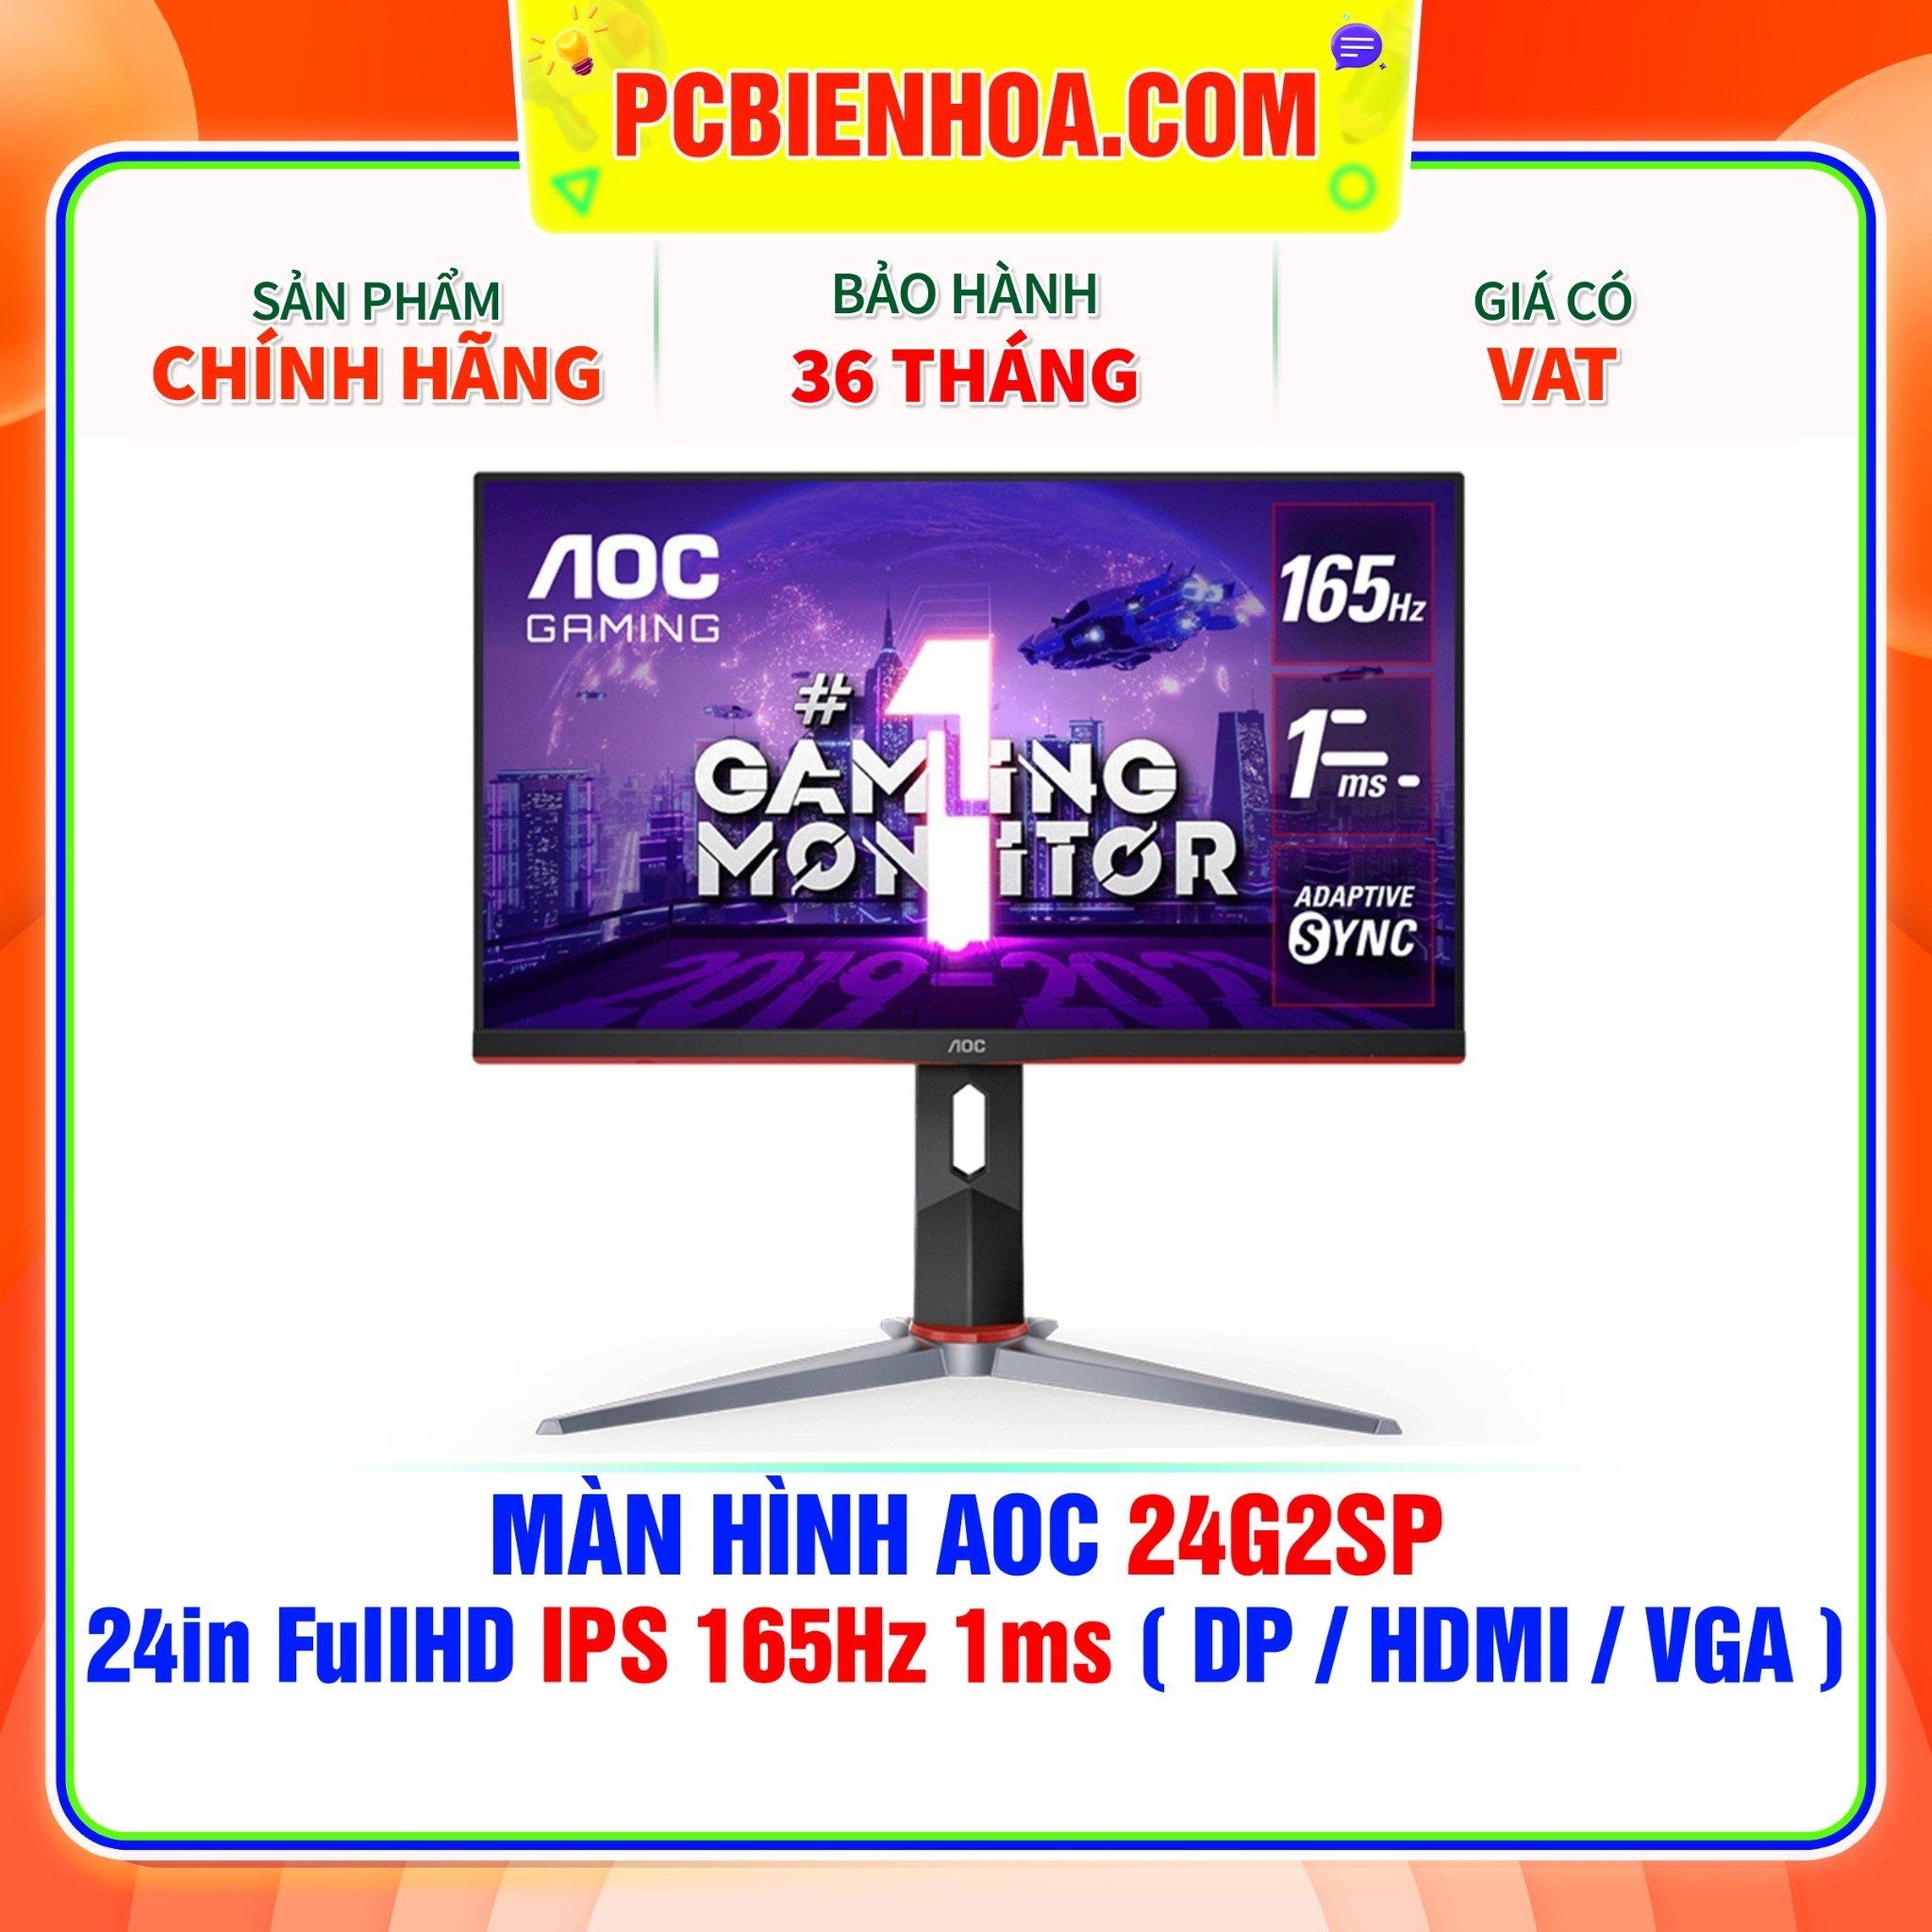  MÀN HÌNH AOC 24G2SP 24in FullHD IPS 165Hz 1ms ( DP / HDMI / VGA ) 